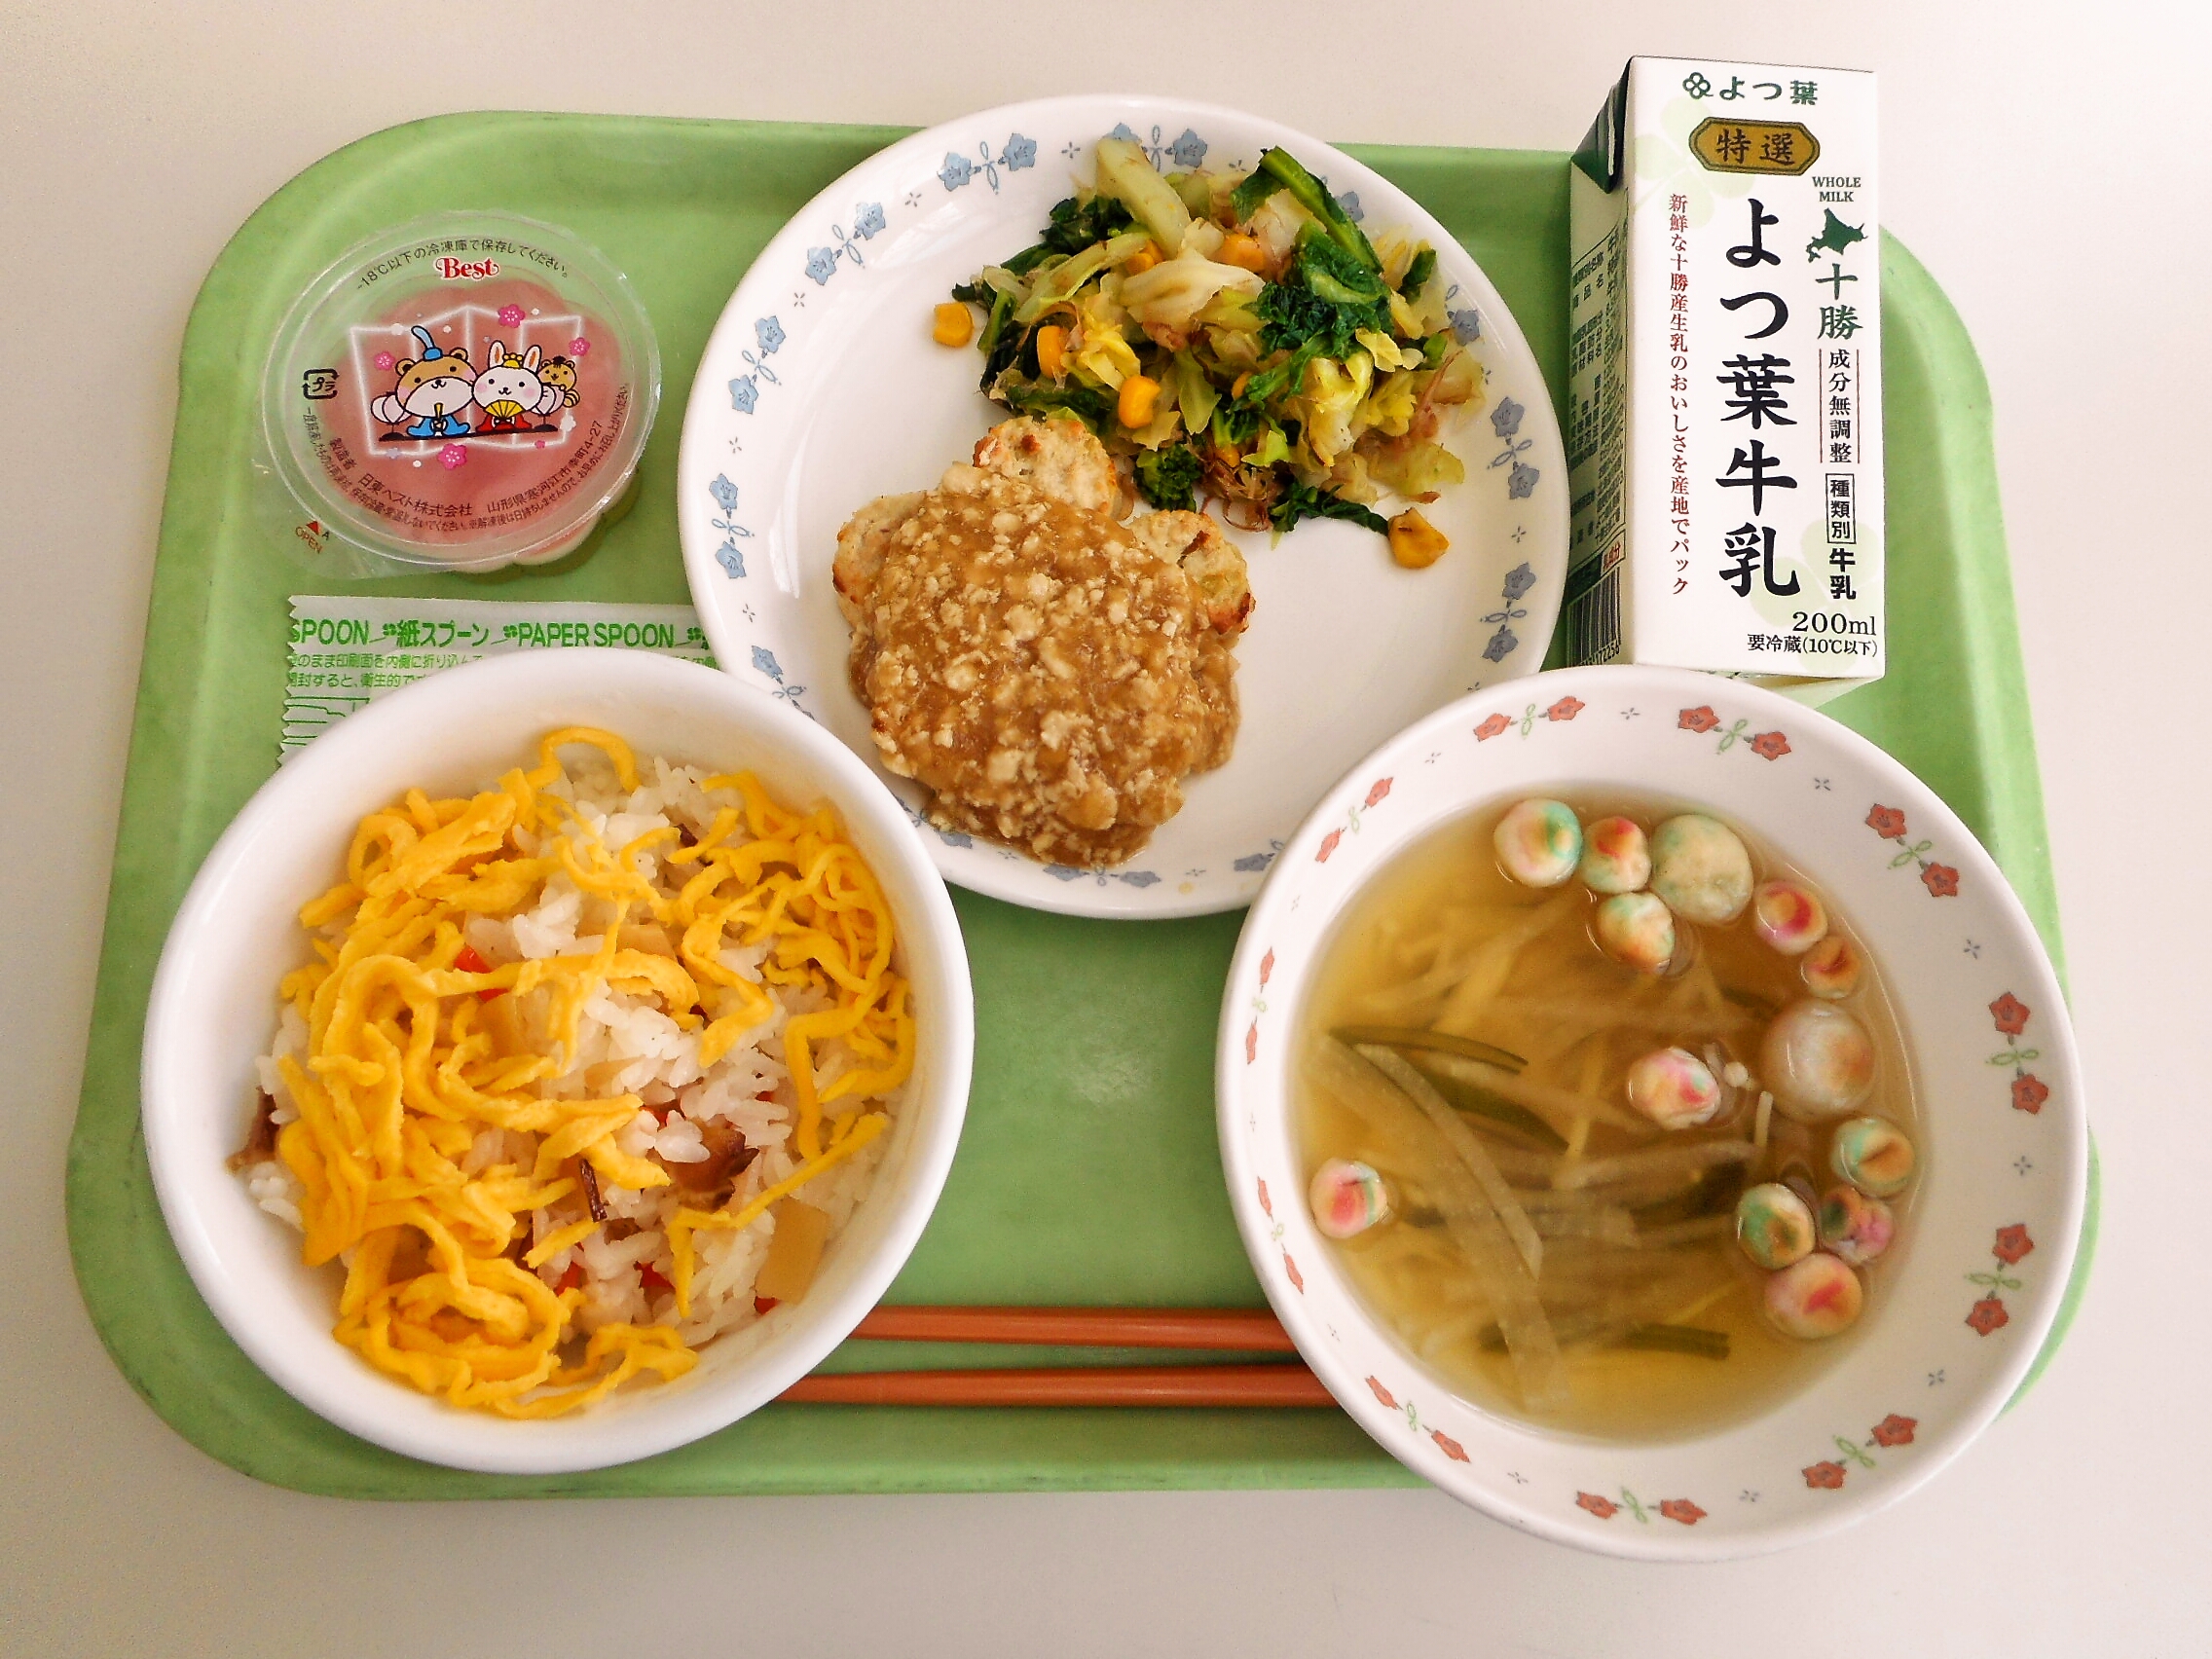 ちらし寿司、すまし汁、花型豆腐バーグのそぼろあん、菜の花の和え物、三食ぜり―、牛乳